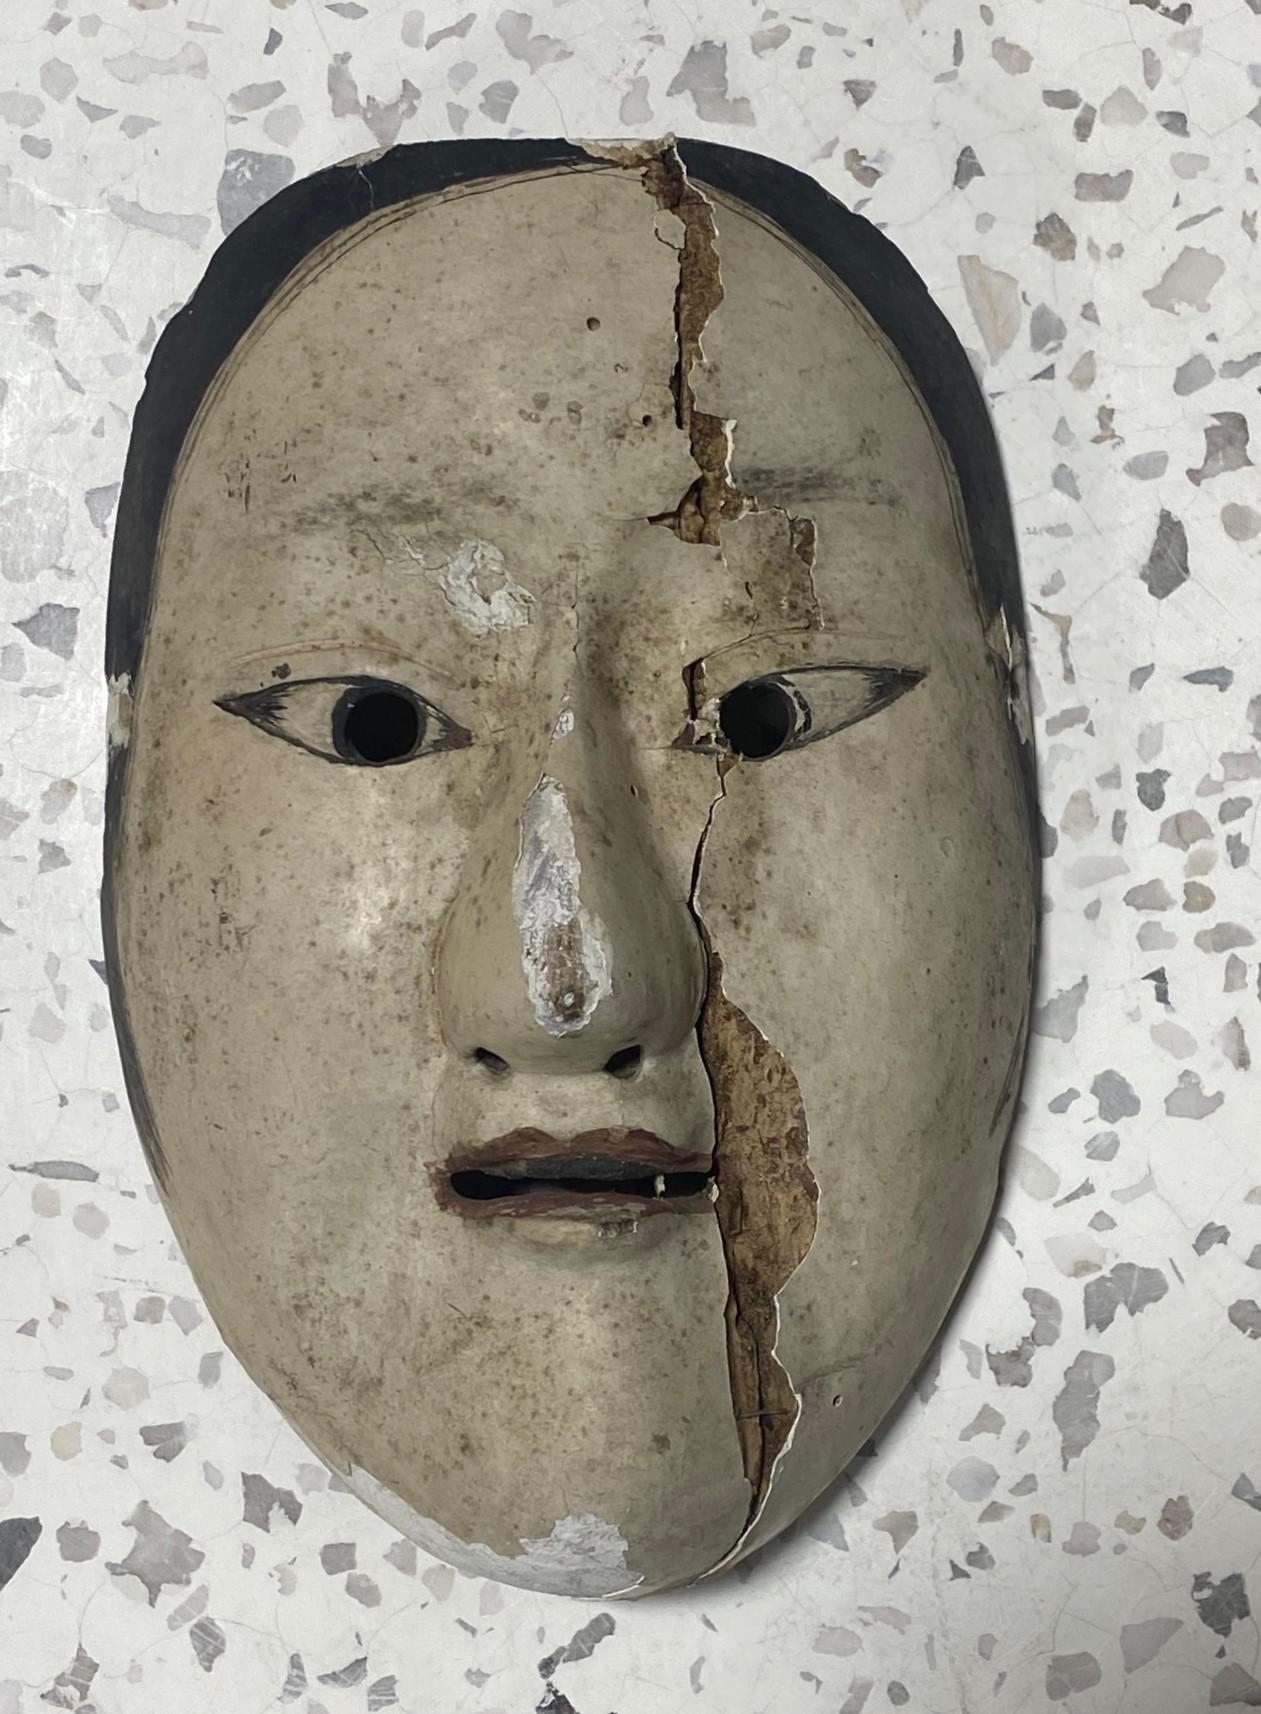 Un masque d'une grande beauté, merveilleusement vieilli et séduisant, conçu pour le théâtre japonais Noh. La beauté naturellement décolorée et le caractère unique nous ont immédiatement attirés vers ce masque. 

Le masque est fabriqué et sculpté à